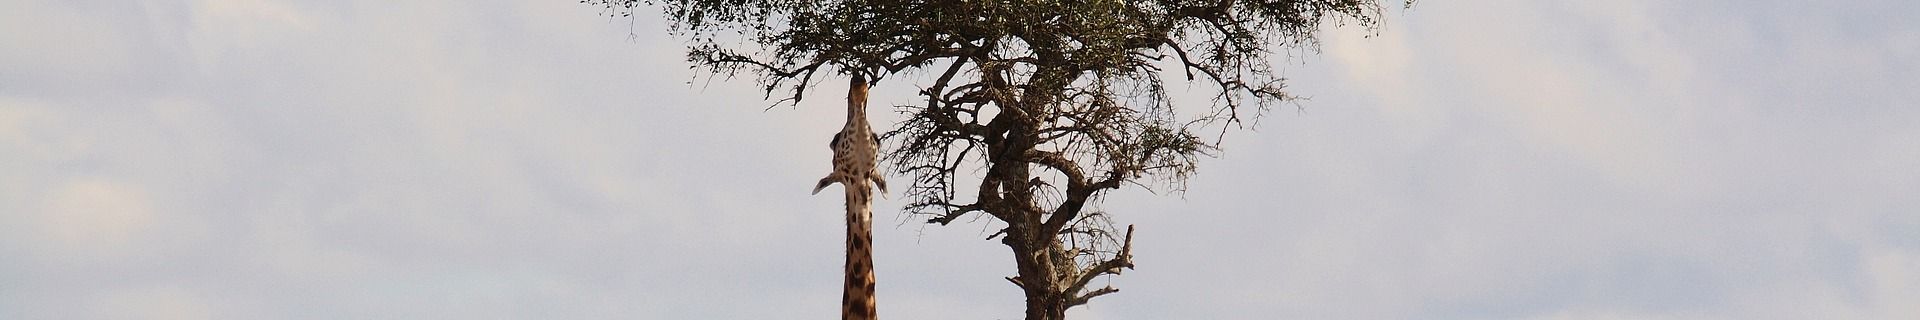 Giraffe Acacia